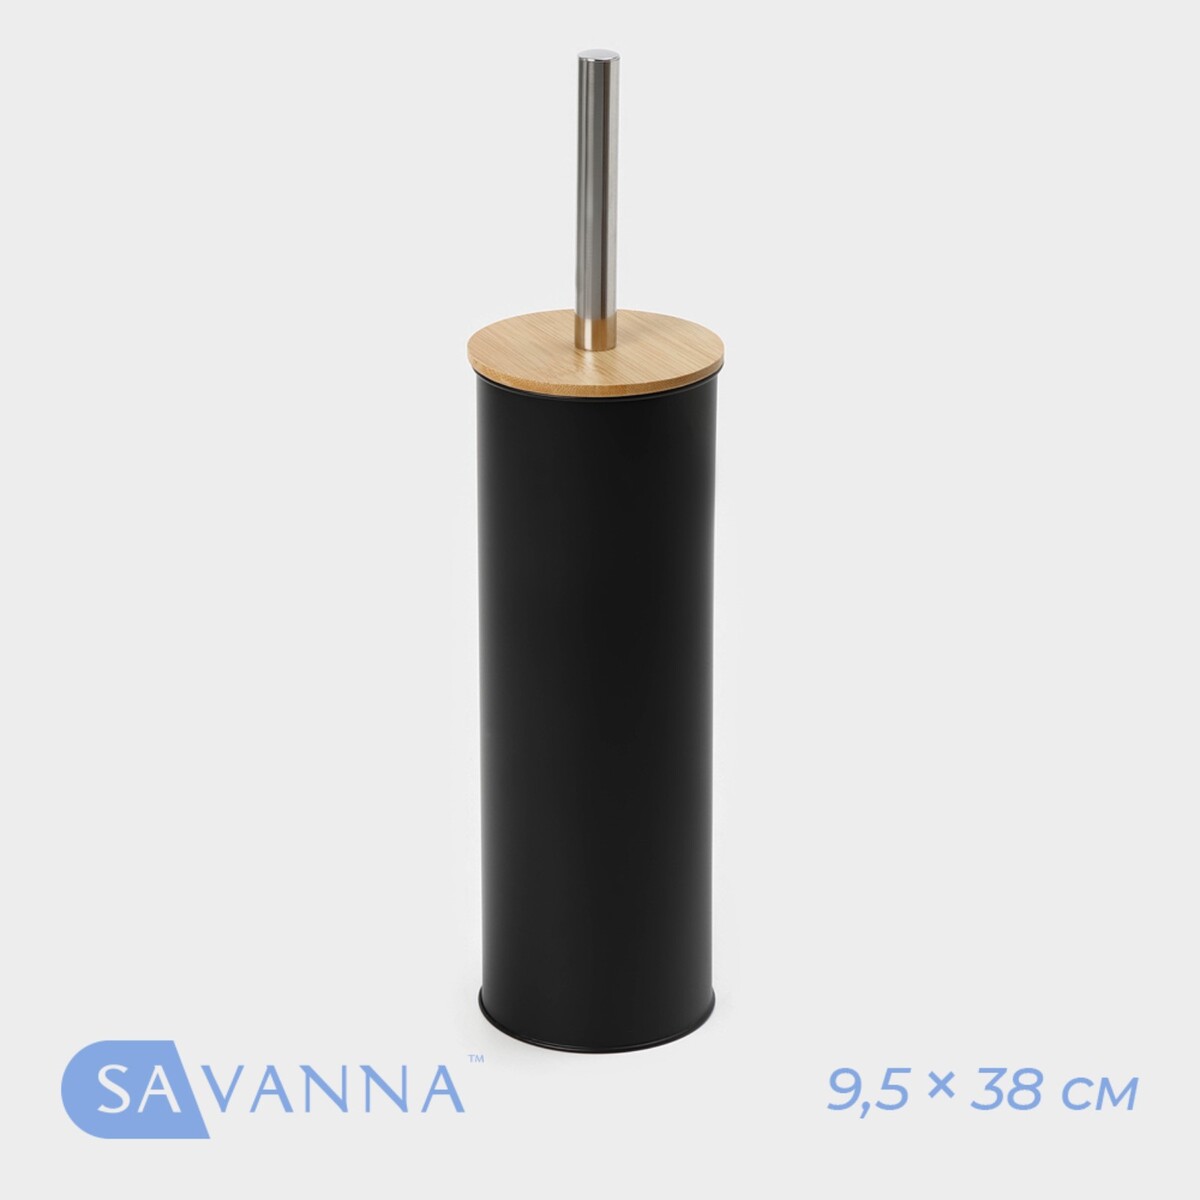 Ёрш для унитаза бамбуковый savanna bamboo, 9,5×38 см, цвет черный ершик для унитаза подвесной wasserkraft donau 9427 9060274